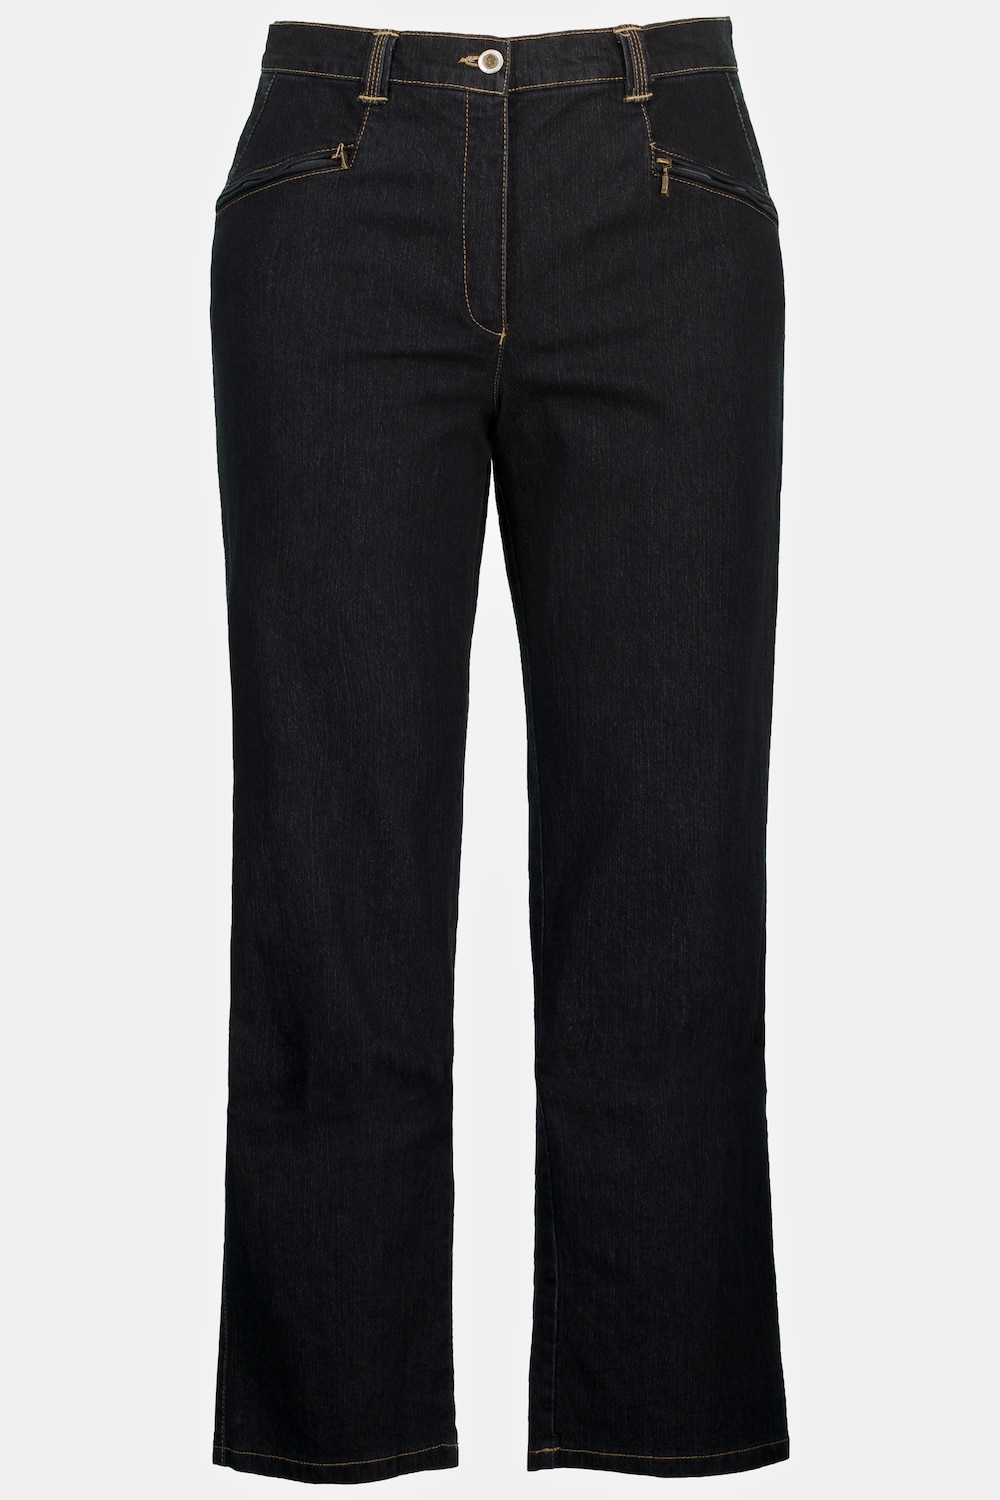 Grote Maten jeans Mony, Dames, zwart, Maat: 32, Katoen/Polyester, Ulla Popken